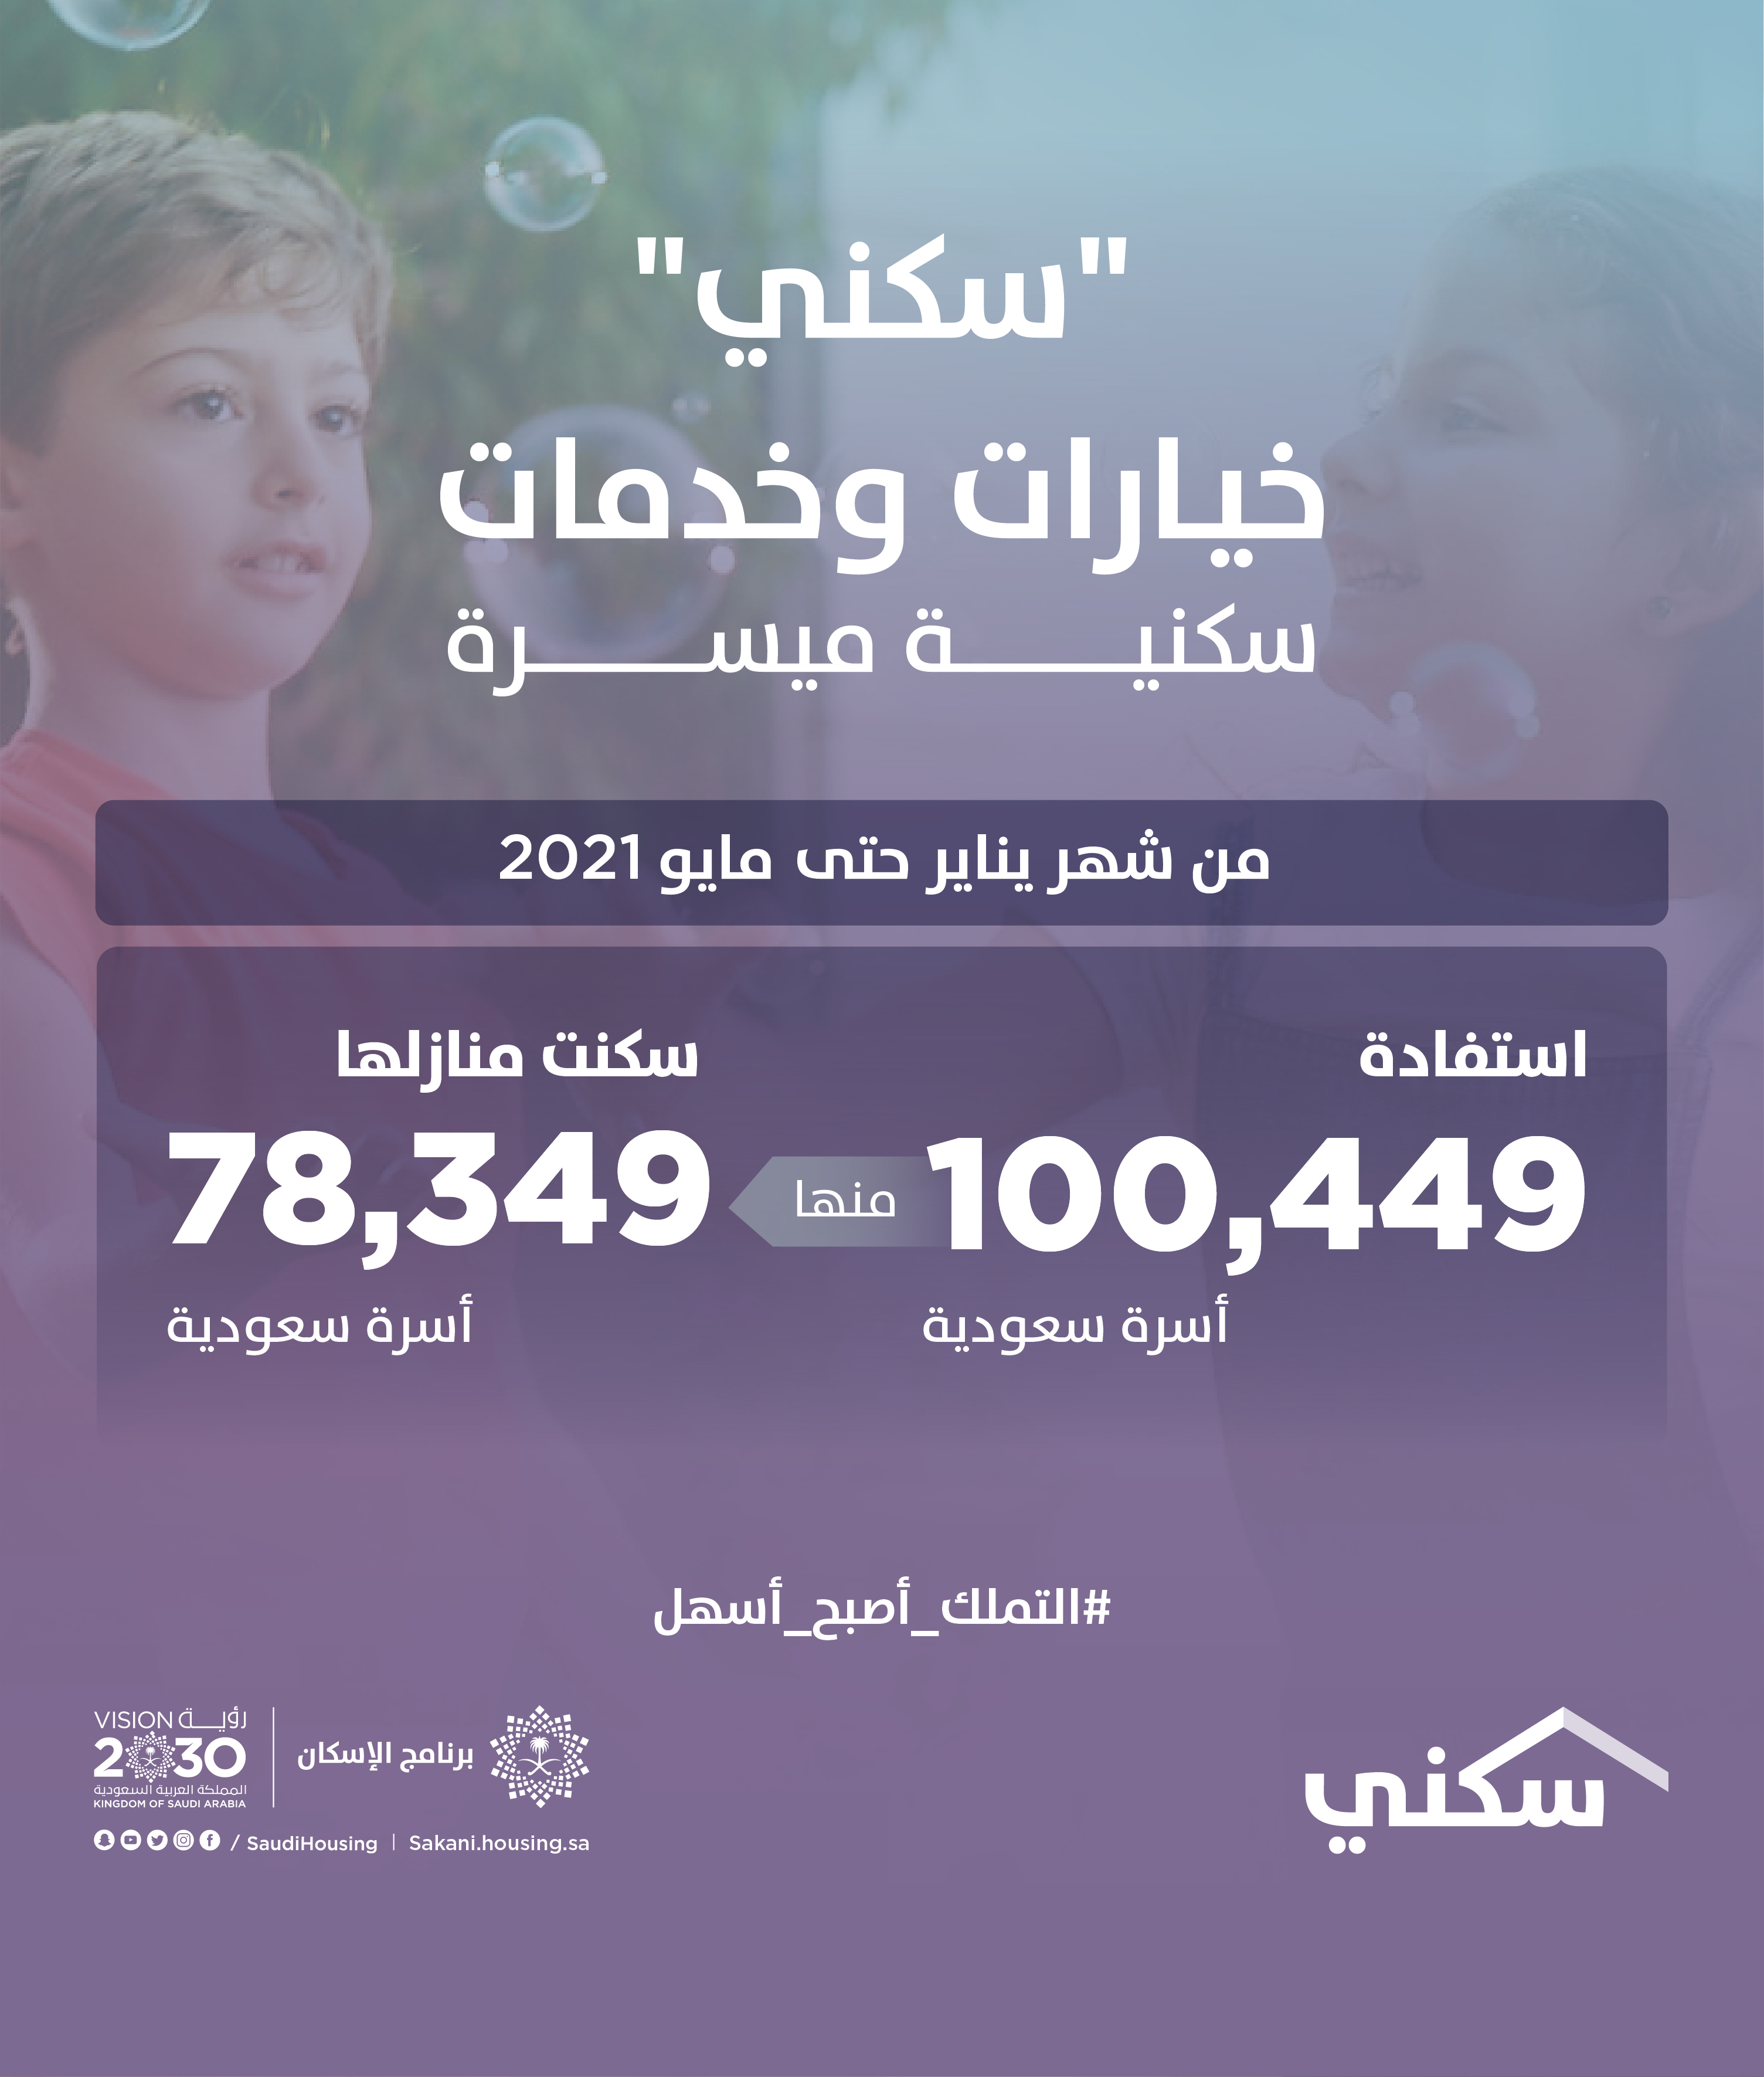 أكثر من 100 ألف أسرة تستفيد من حلول "سكني" منذ بداية العام حتى مايو الماضي